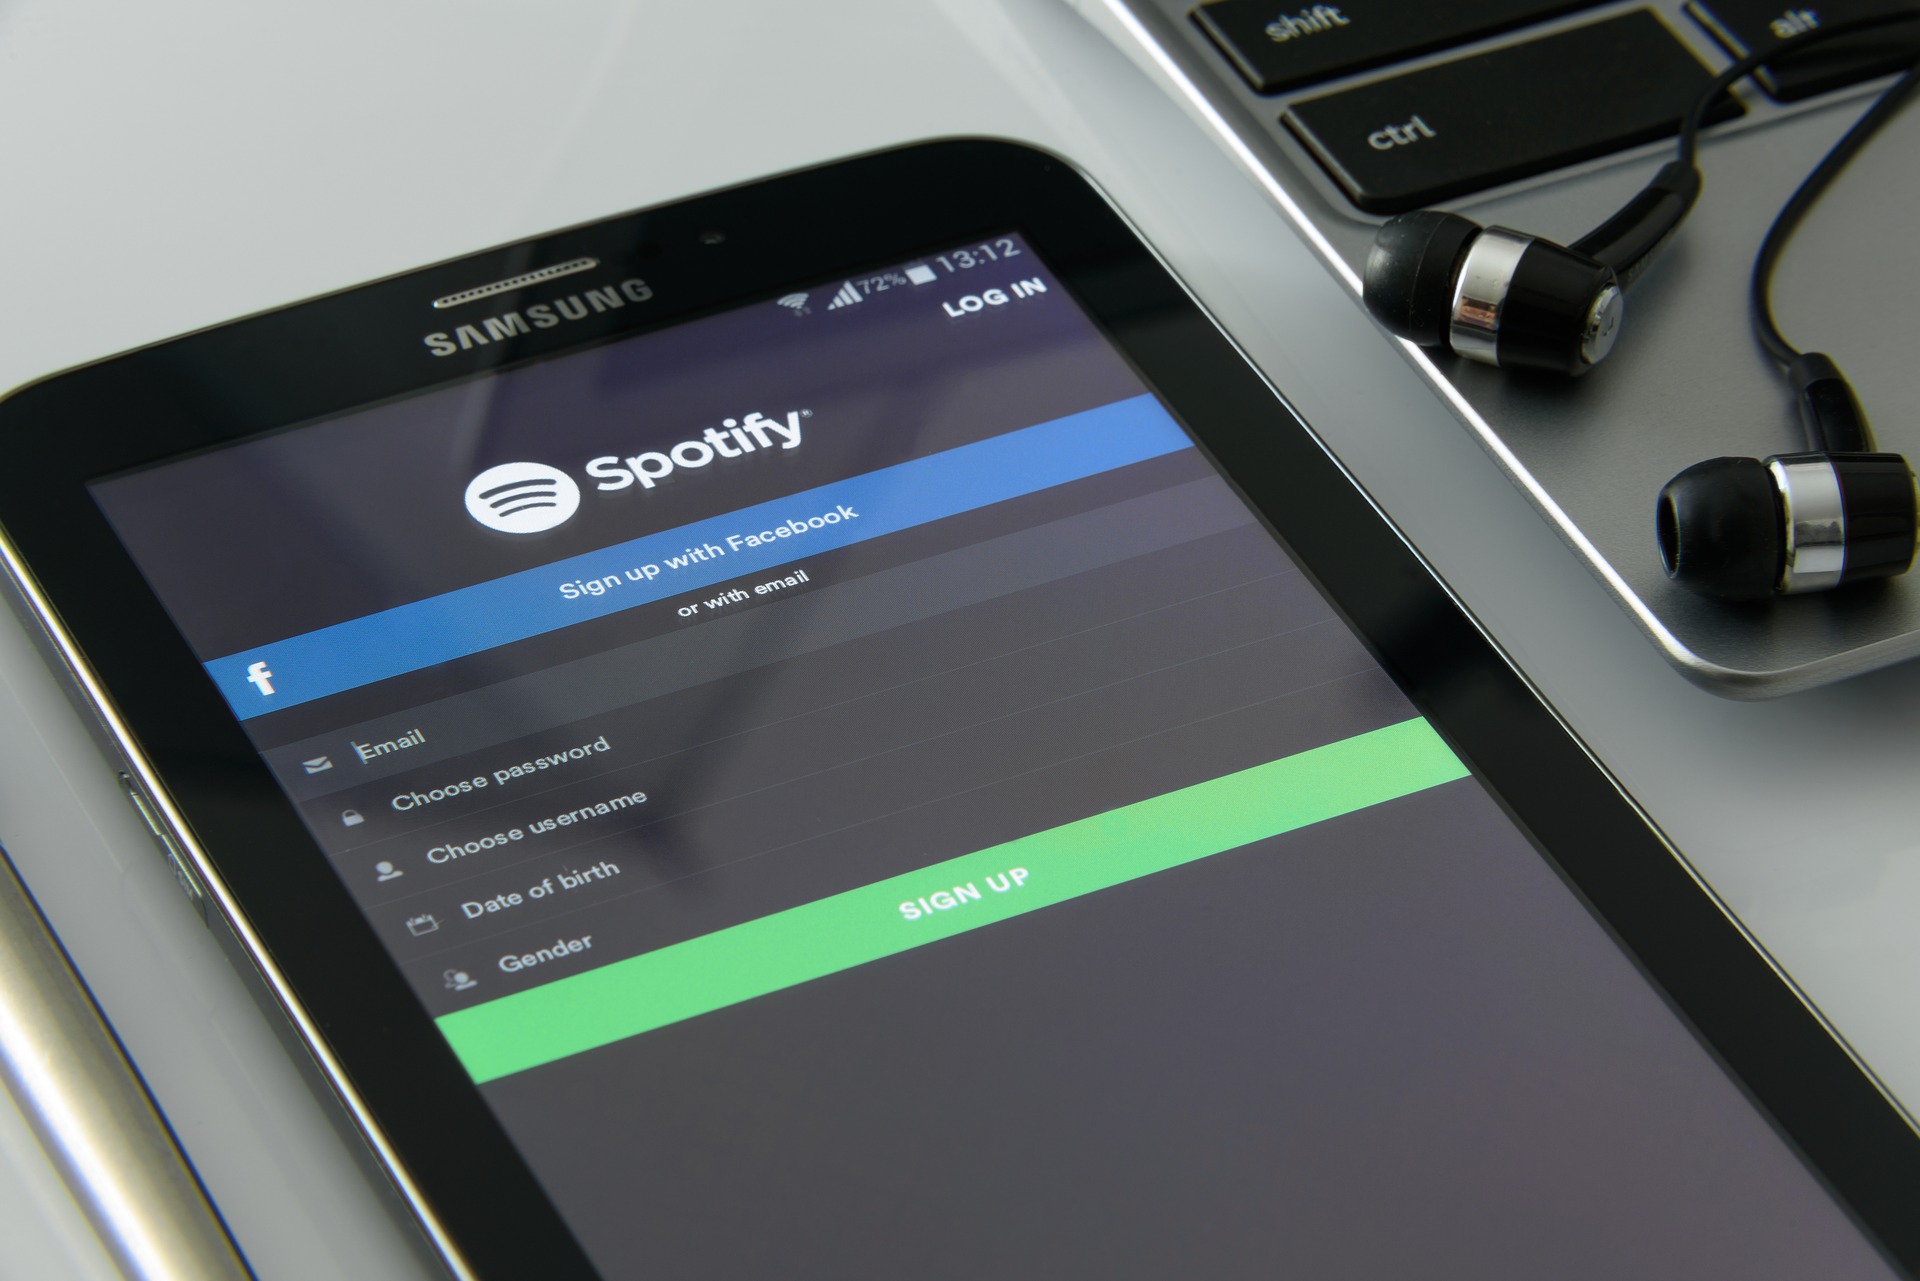  Spotify et Samsung s’allient contre Apple Music